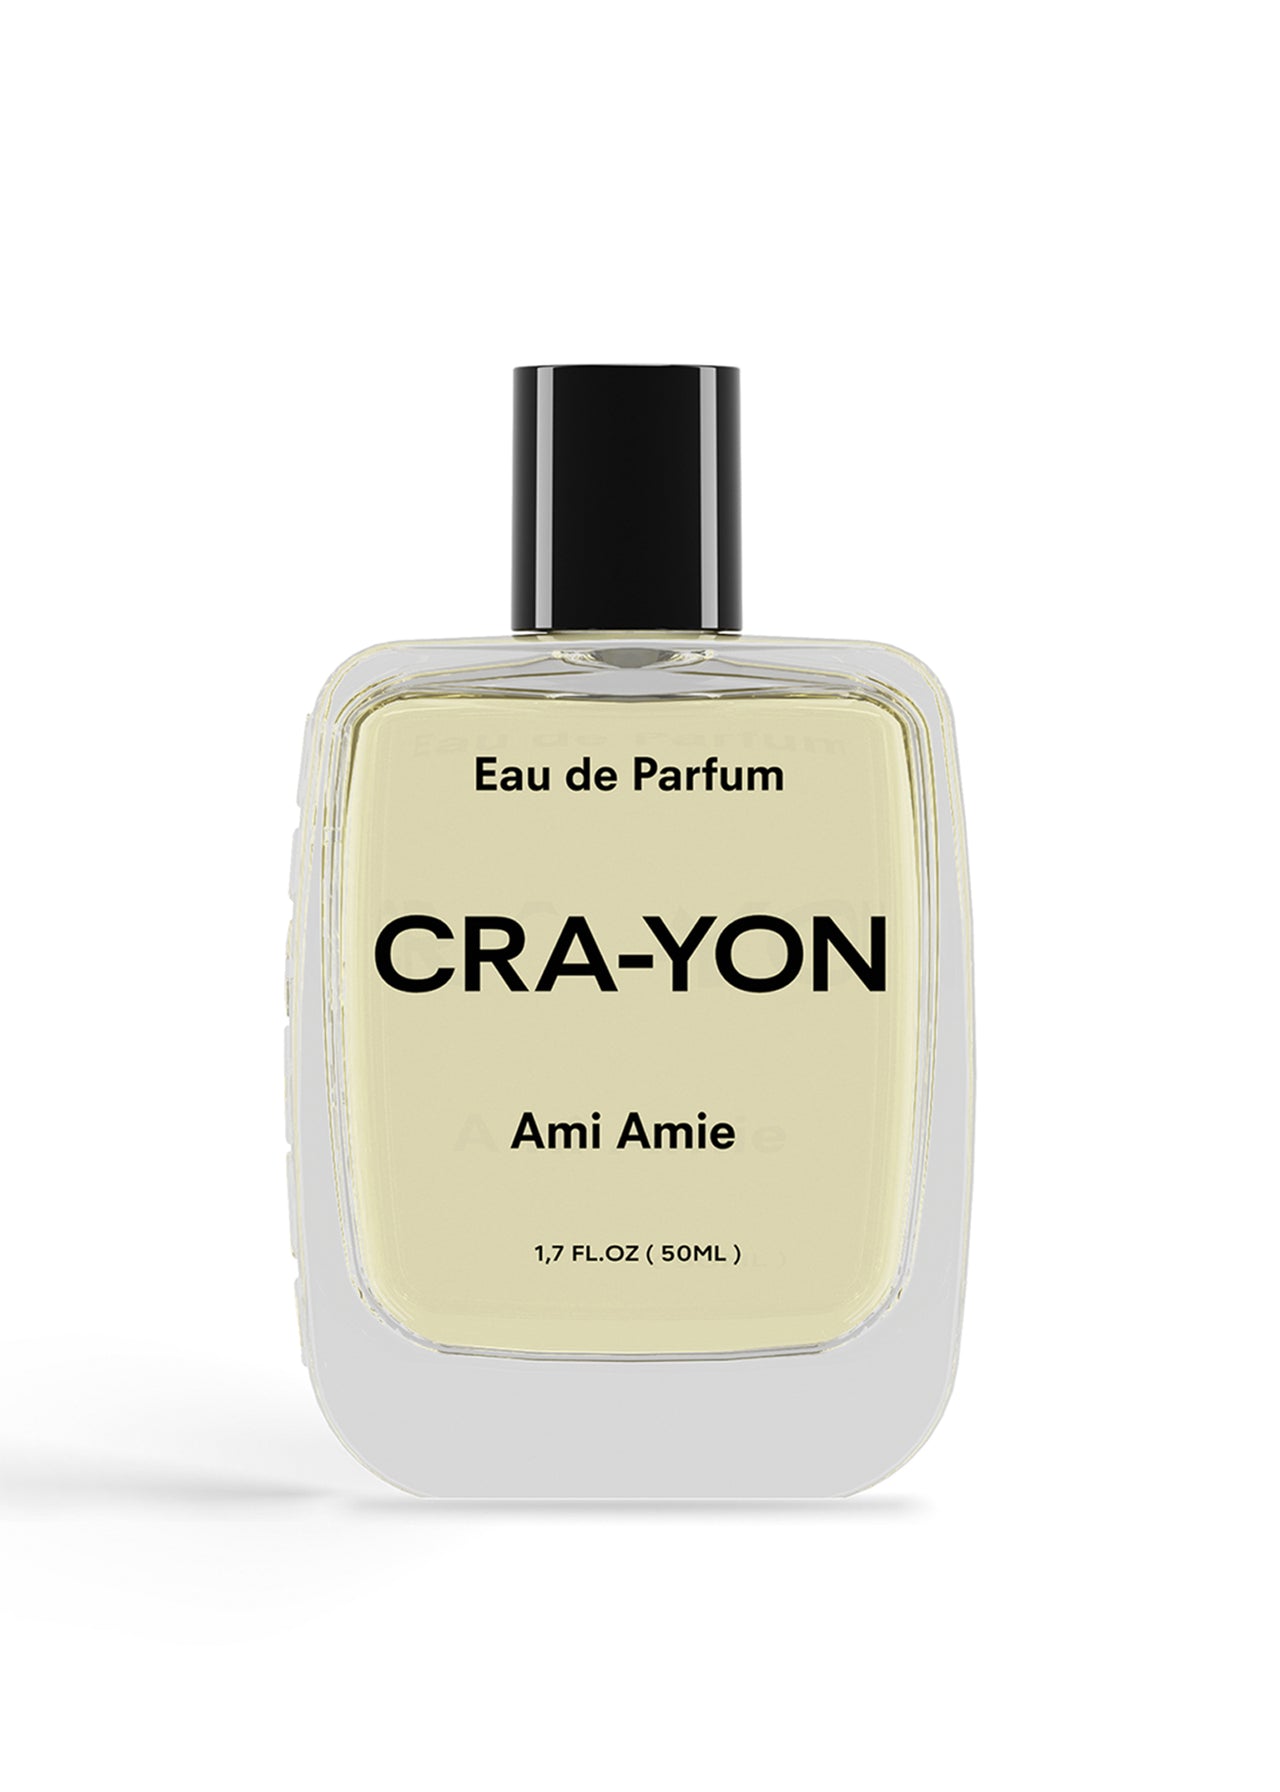 CRA-YON Ami Amie Eau de Parfum